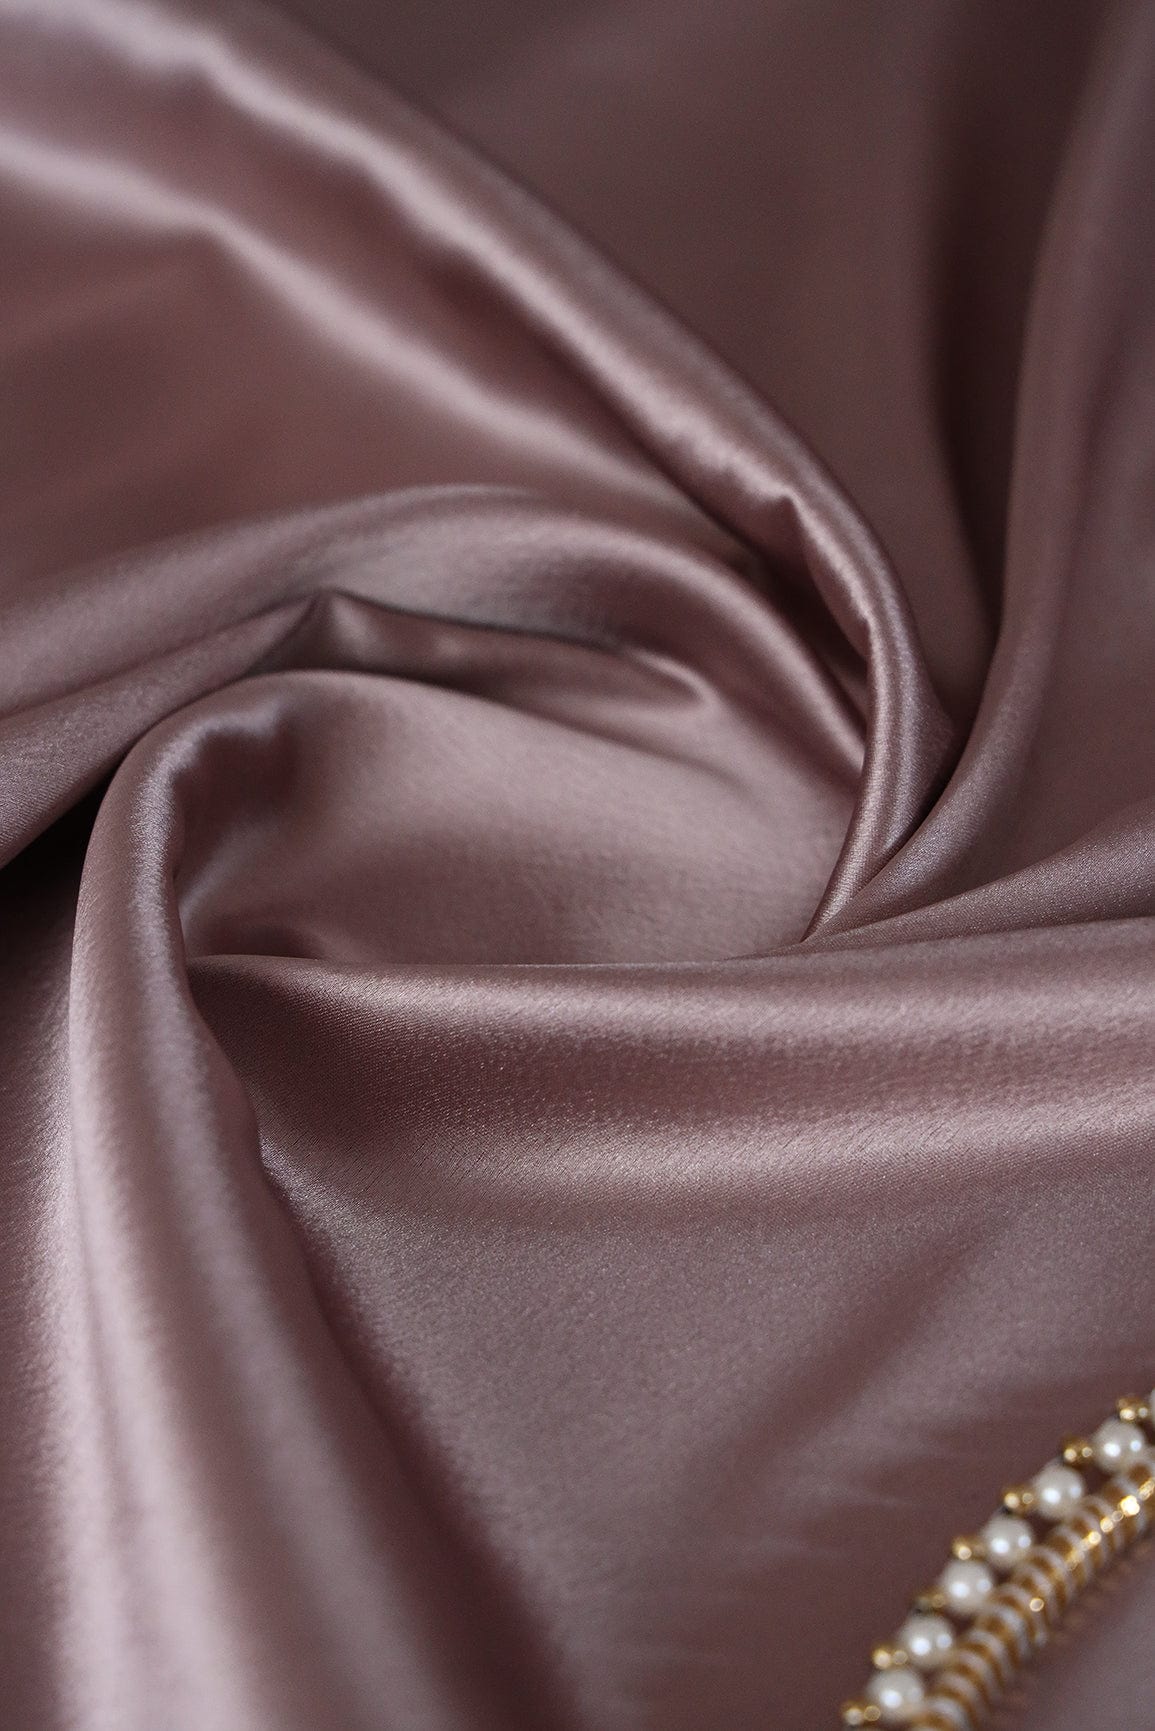 doeraa Plain Fabrics Rosey Mauve Dyed Satin